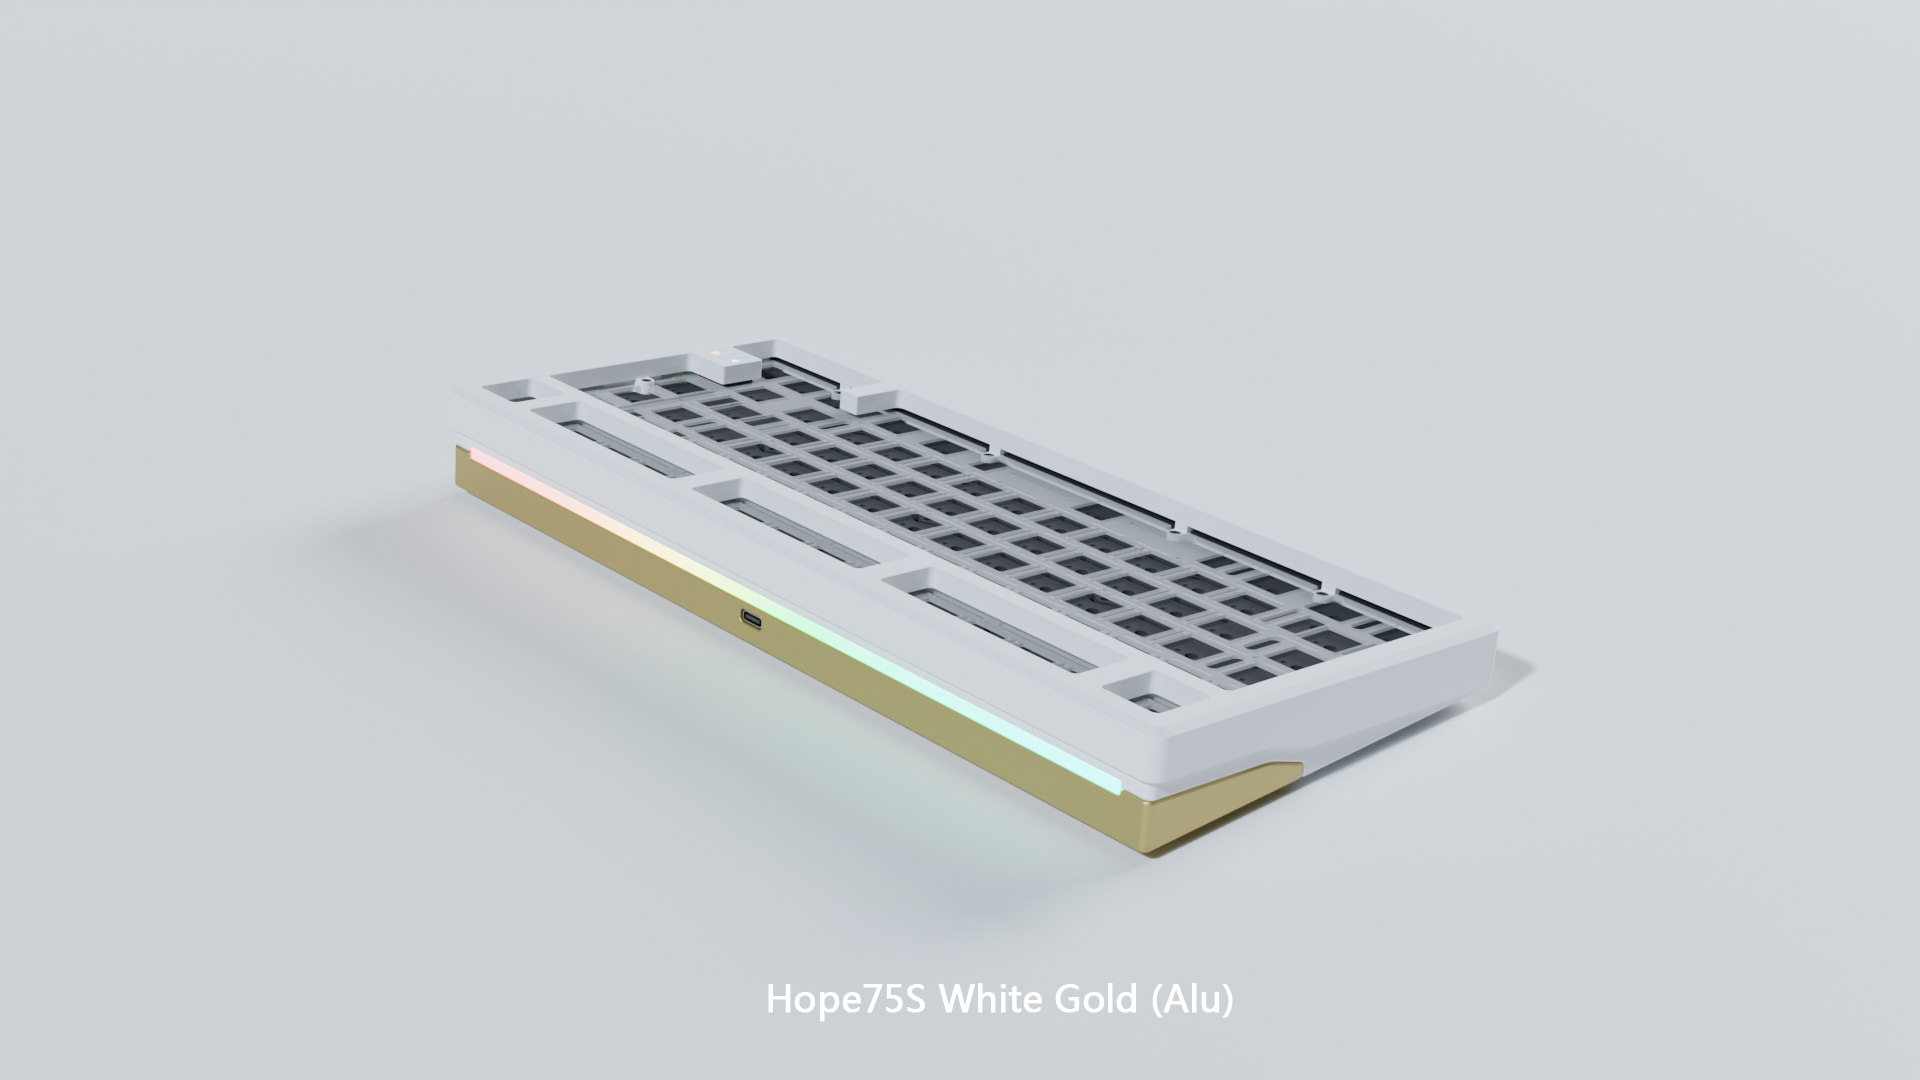 HOPE75S STANDARD KEYBOARD KIT White / Gold / Aluminum